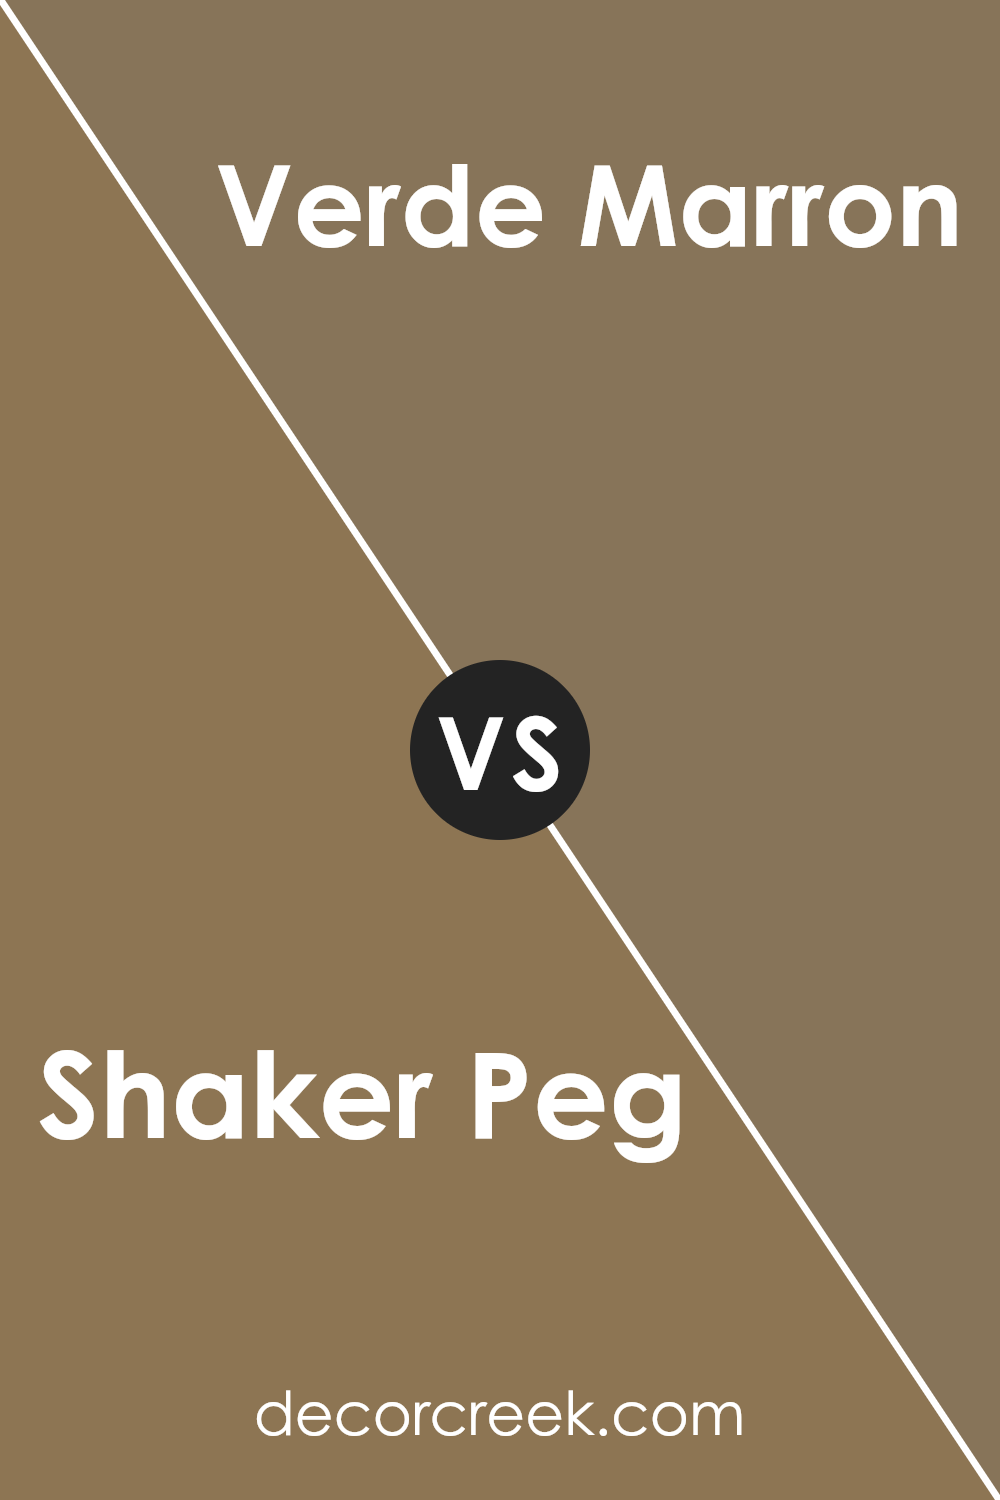 shaker_peg_sw_9539_vs_verde_marron_sw_9124